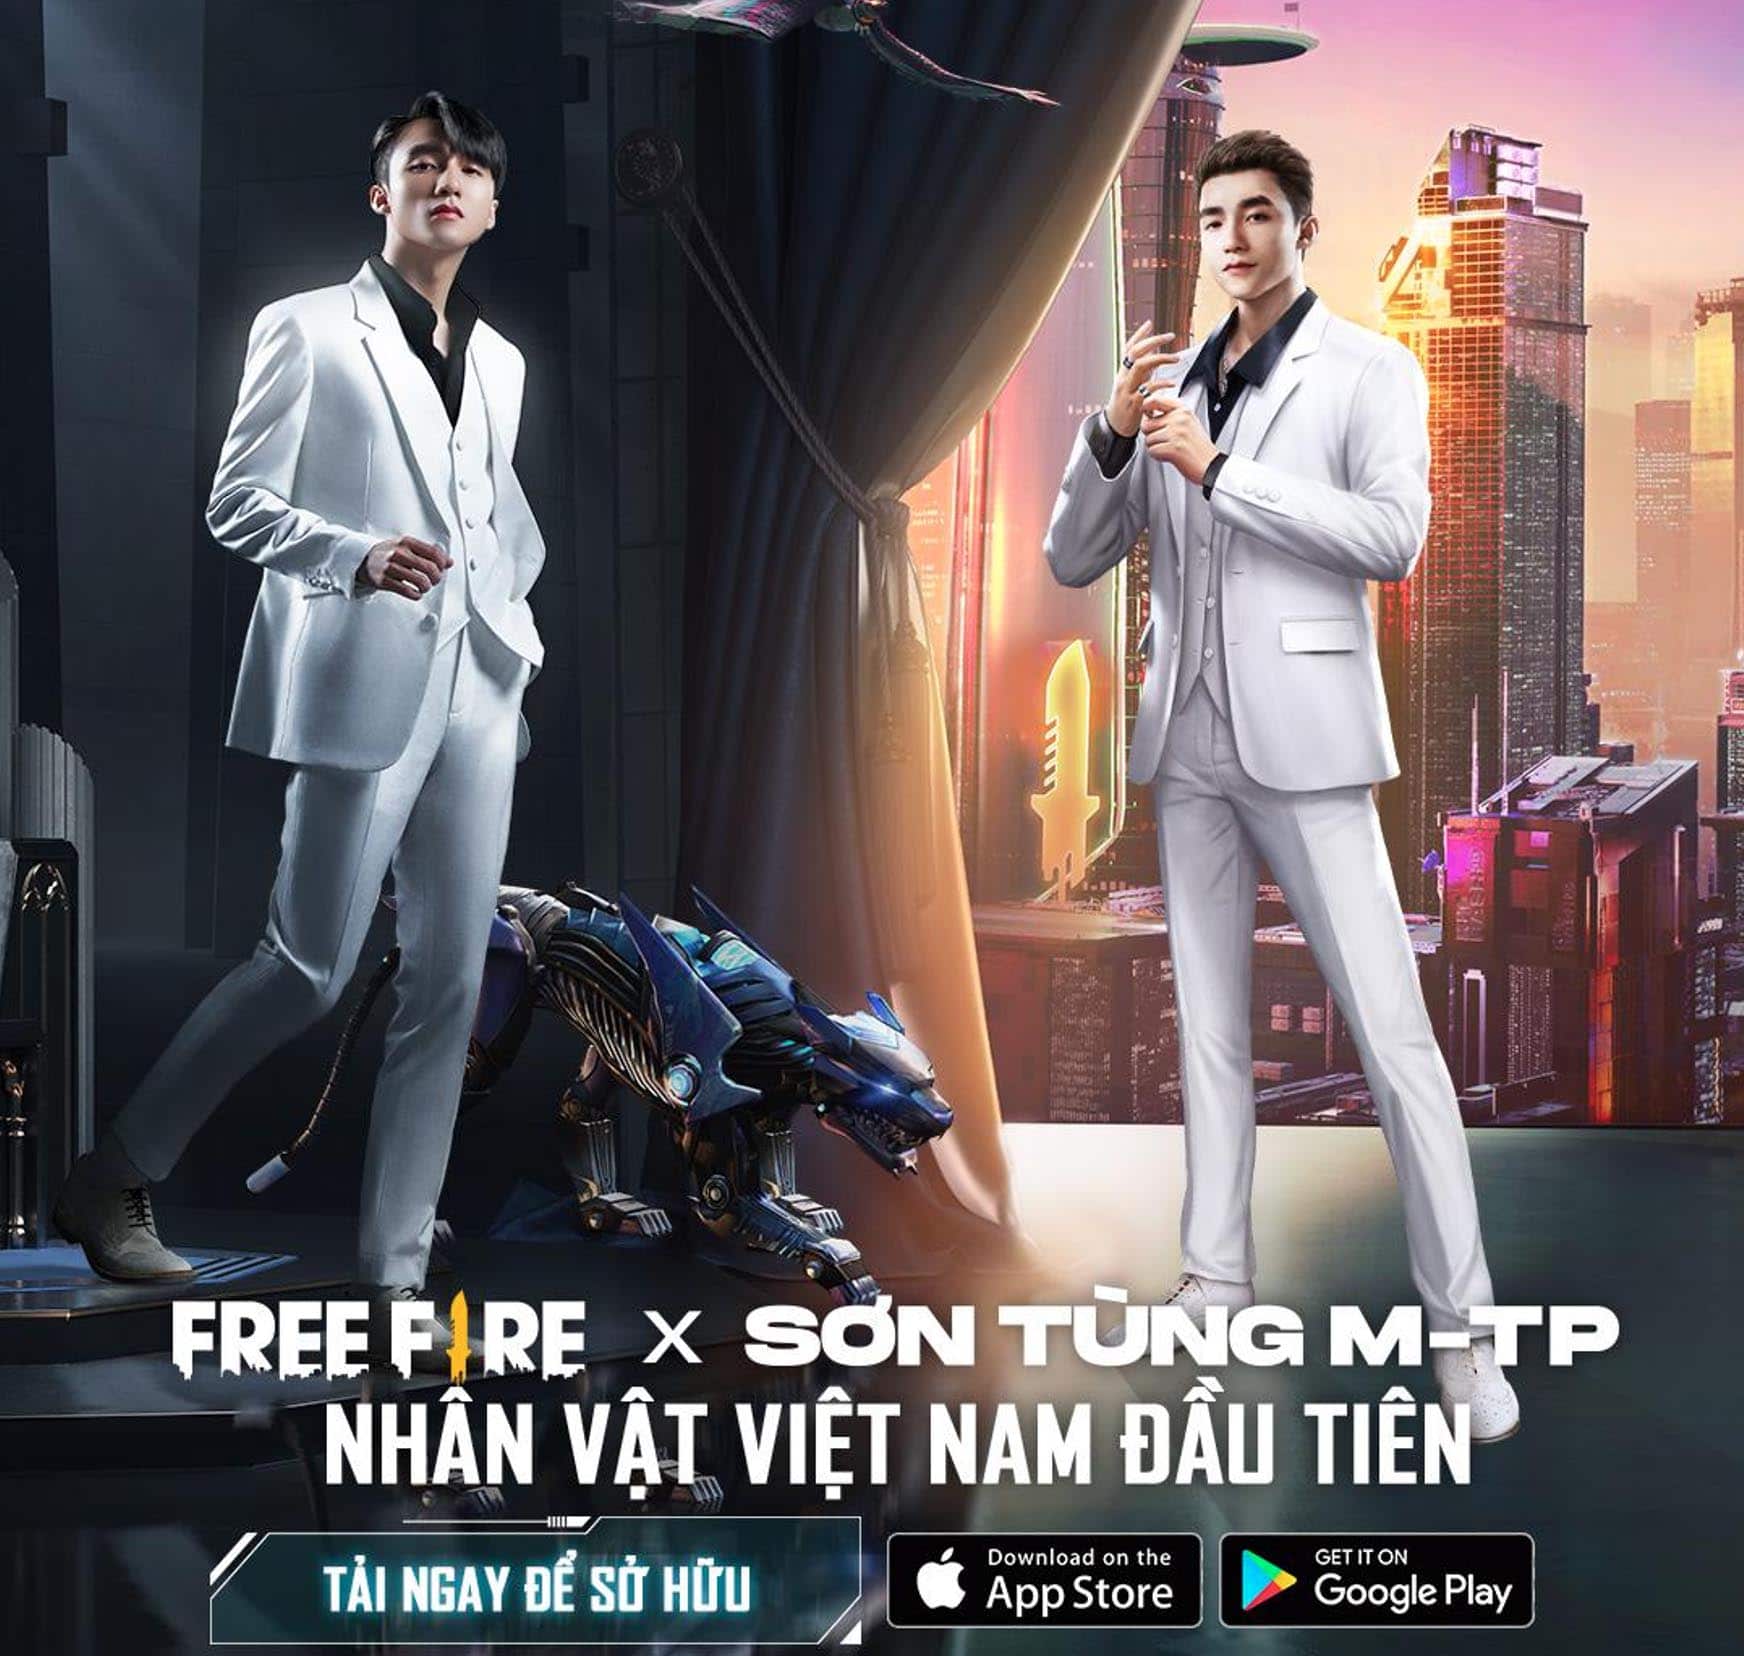 Sơn Tùng M-TP chính thức tung MV mới, từ nhạc đến hình cực chất xứng đáng hit mới ngay đầu năm 2021